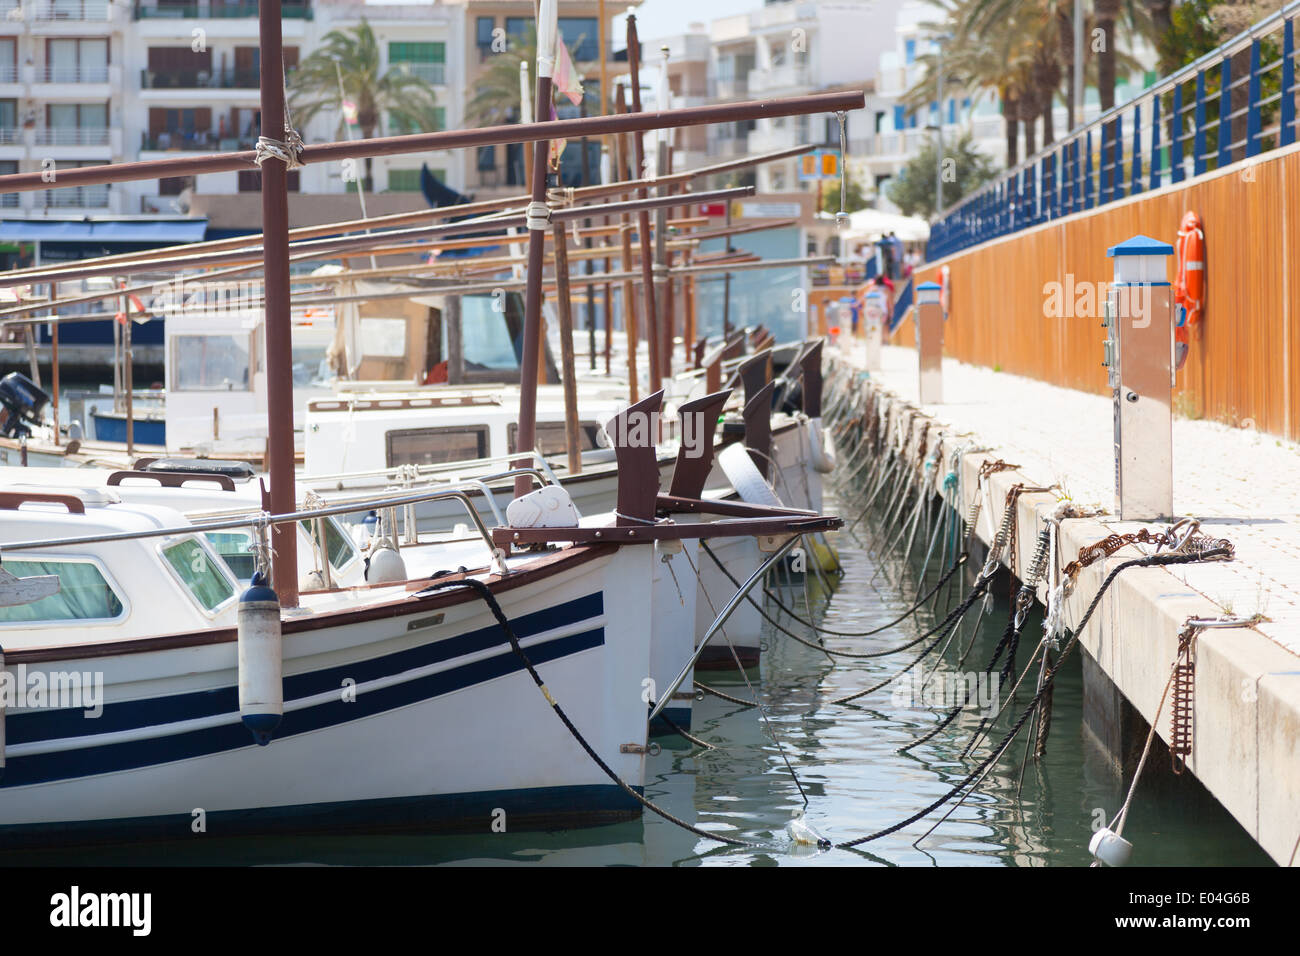 Boats in harbor at cala bona majorca Stock Photo - Alamy